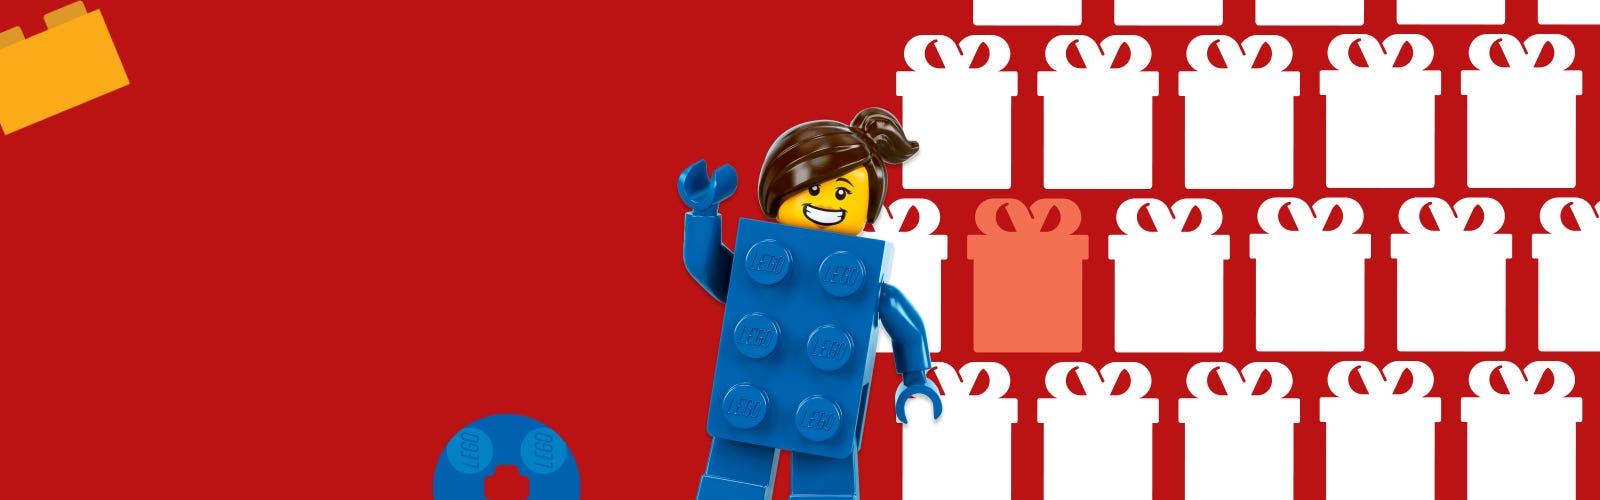 Organisez un anniversaire pour les enfants sur le thème LEGO